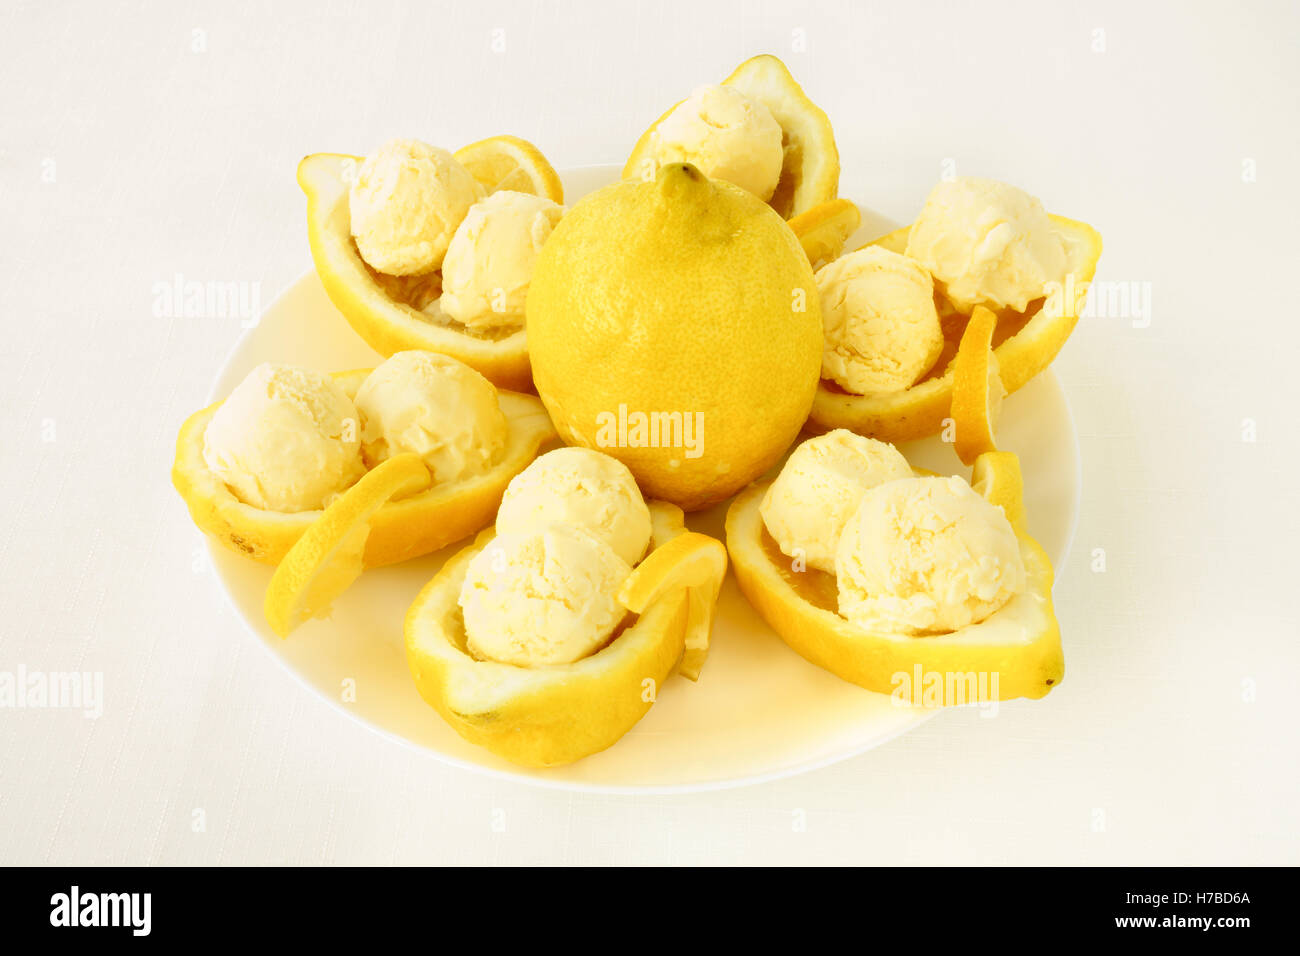 Amalfitano Lemon Halves filled with Lemon Ice Cream Stock Photo